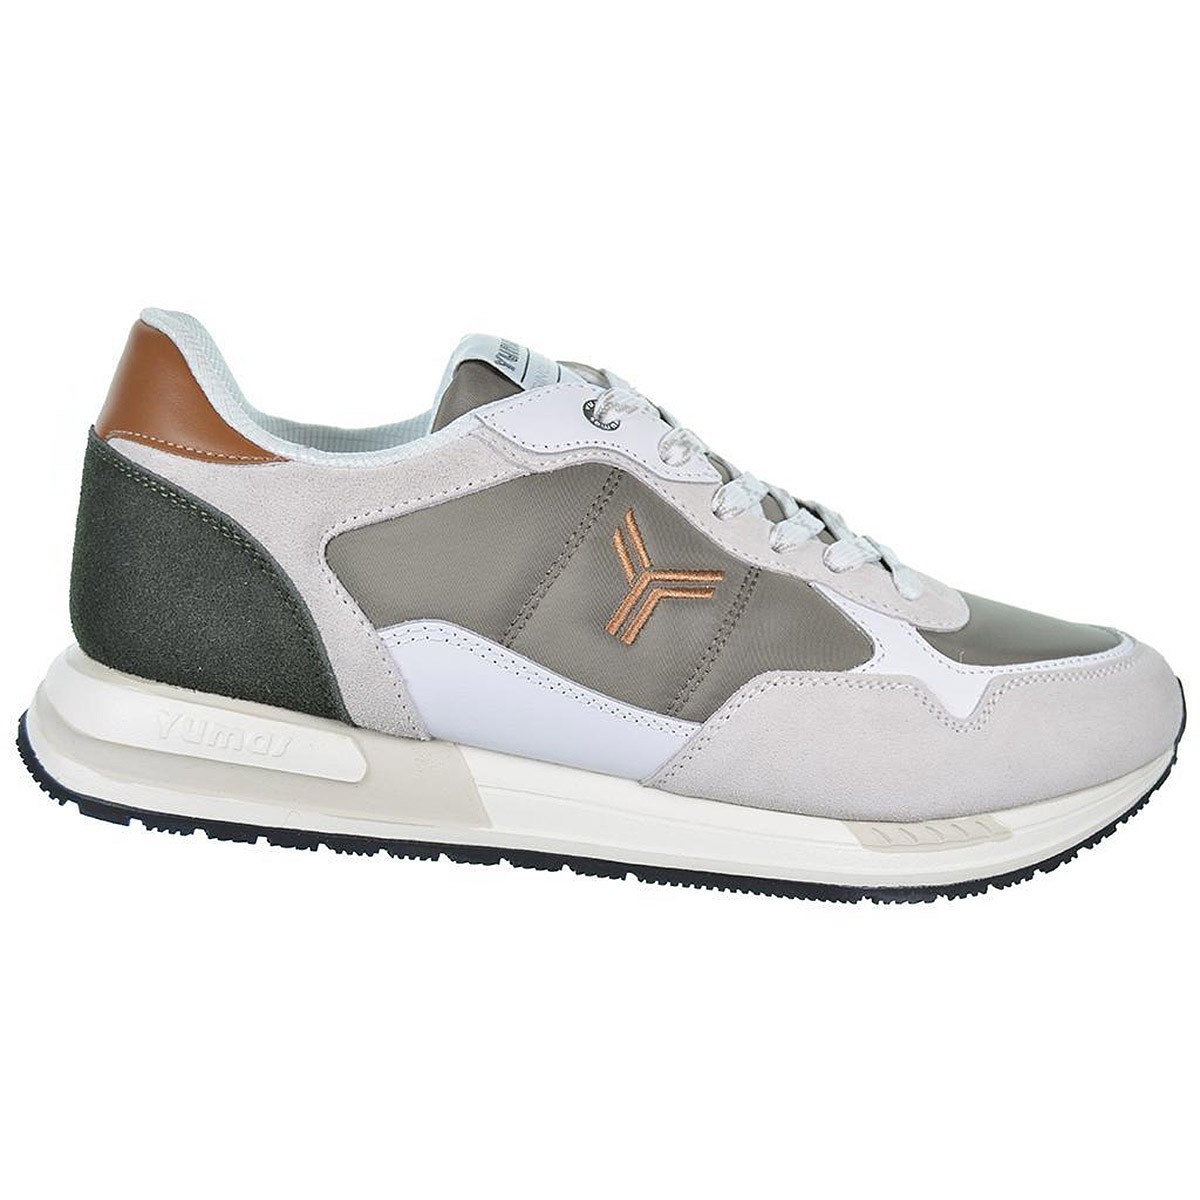 Tamesis Yumas Sneaker en serraje y nylon, forro textil acolchado transpirable, plantilla latex. Cordones. Suela de caucho